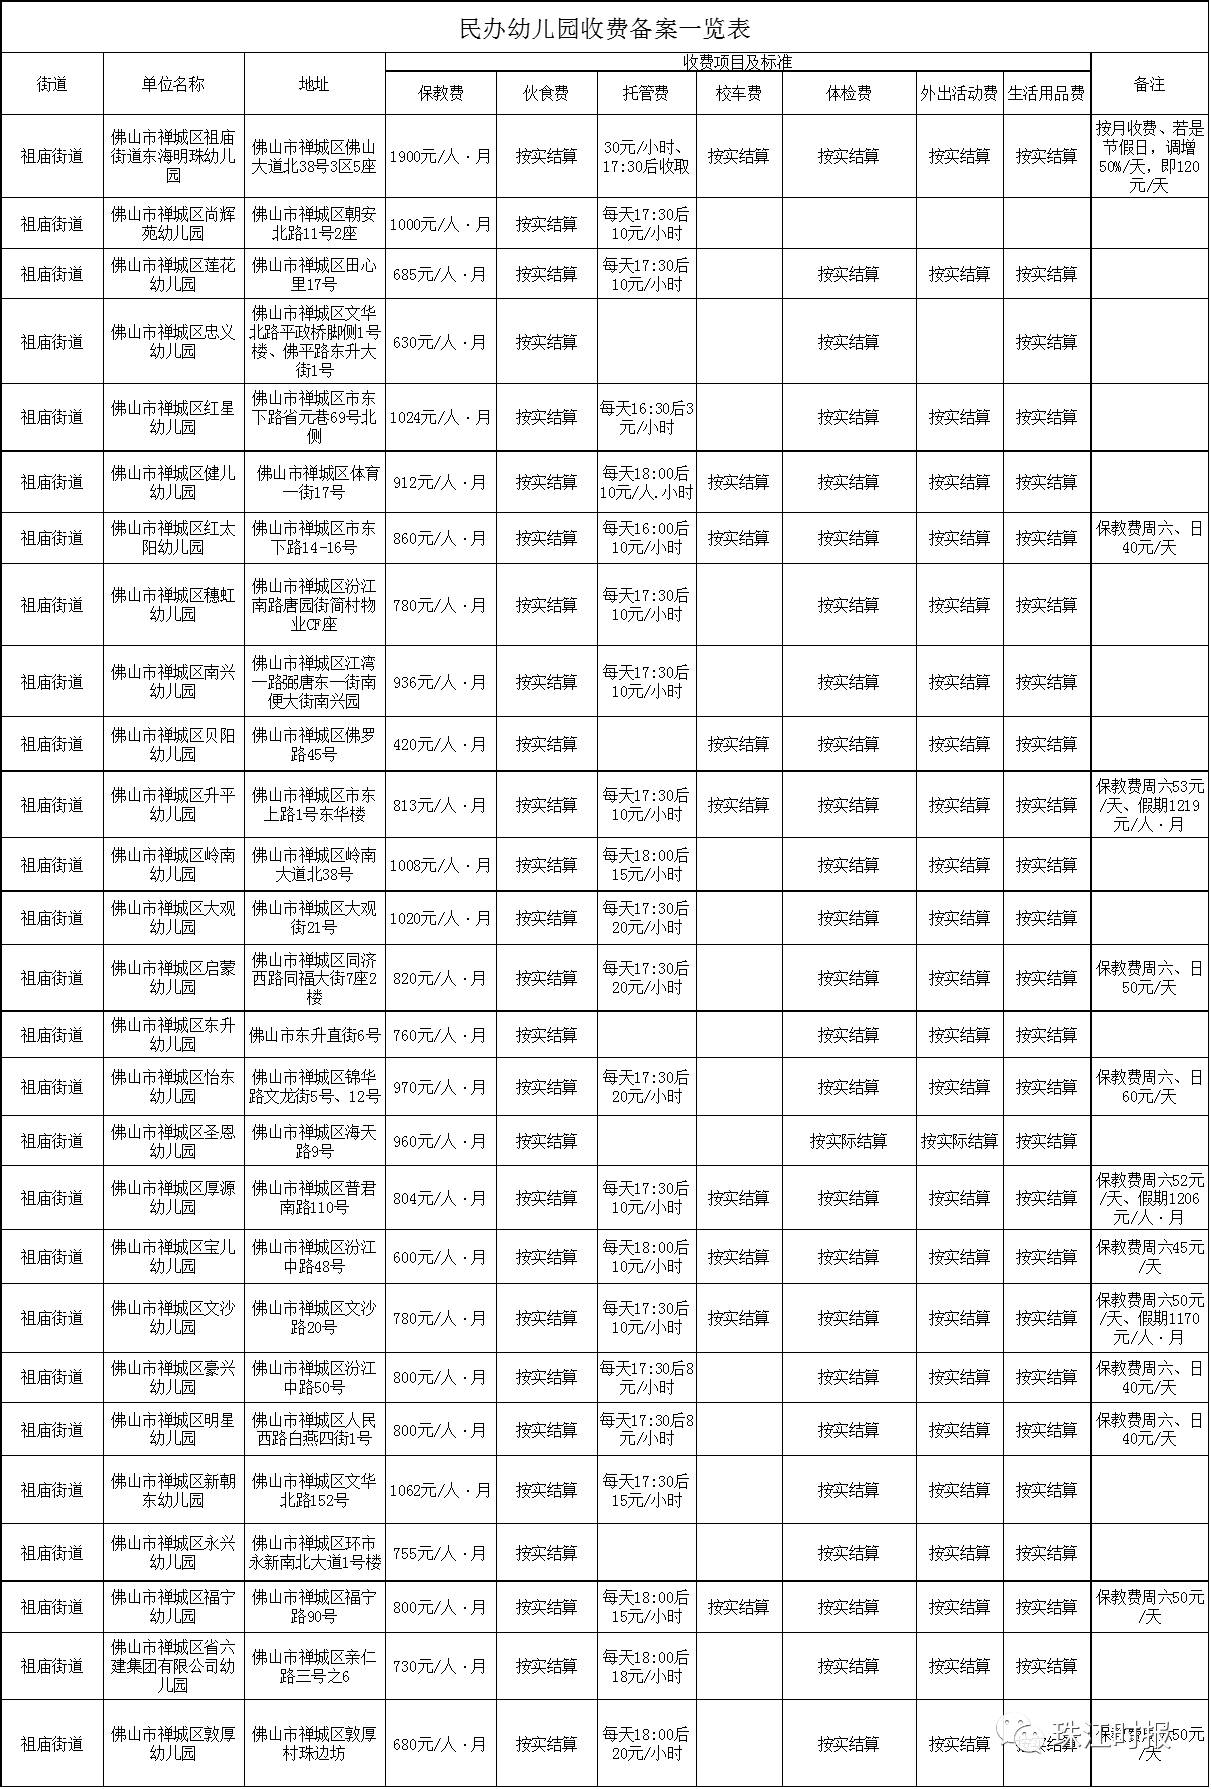 禅城民办幼儿园收费备案一览表 (拖动进度条查看) (点击查看大图)